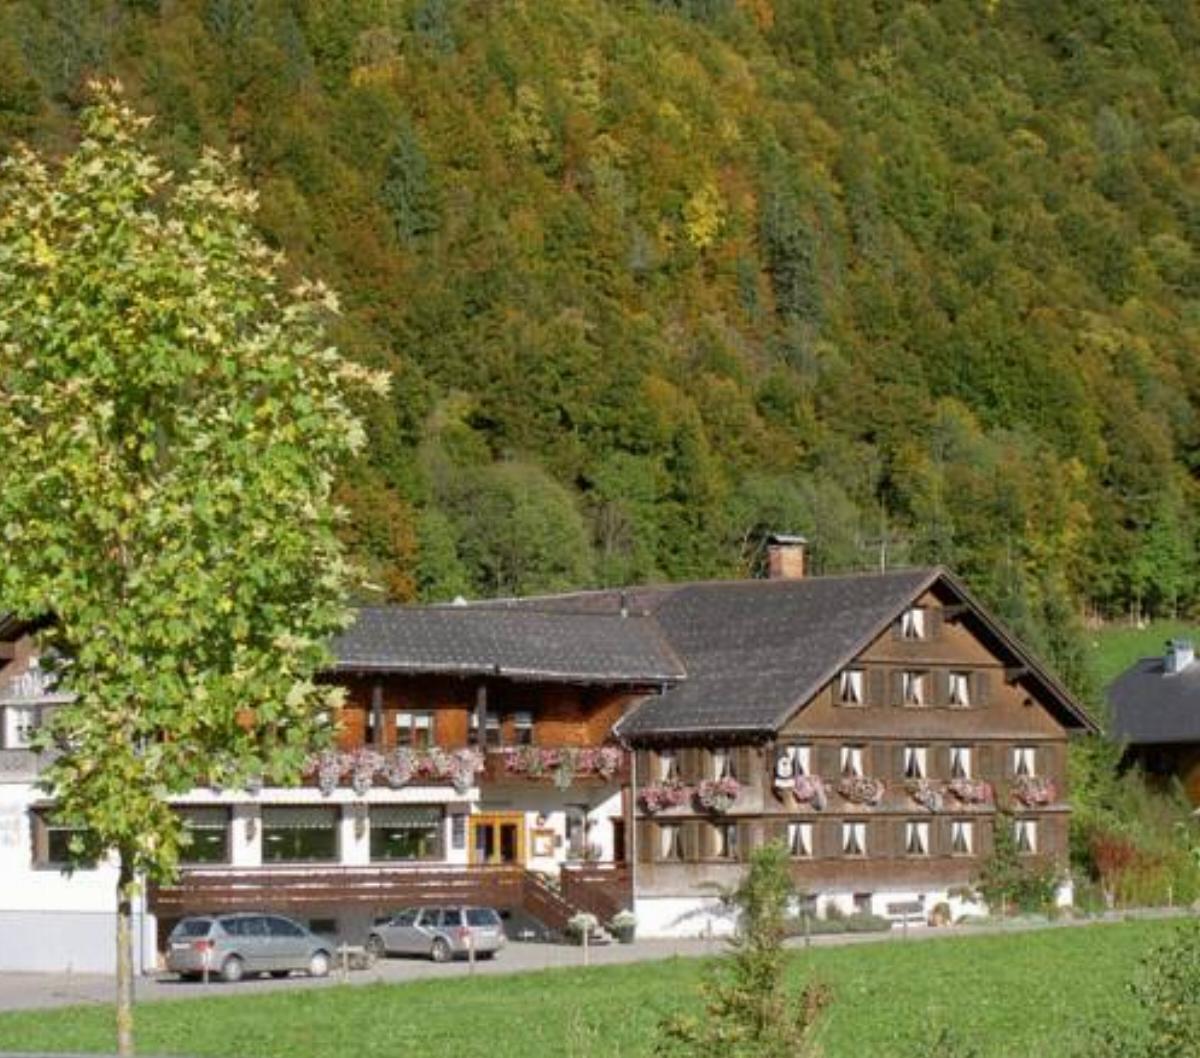 Hotel Tannahof Hotel Au im Bregenzerwald Austria